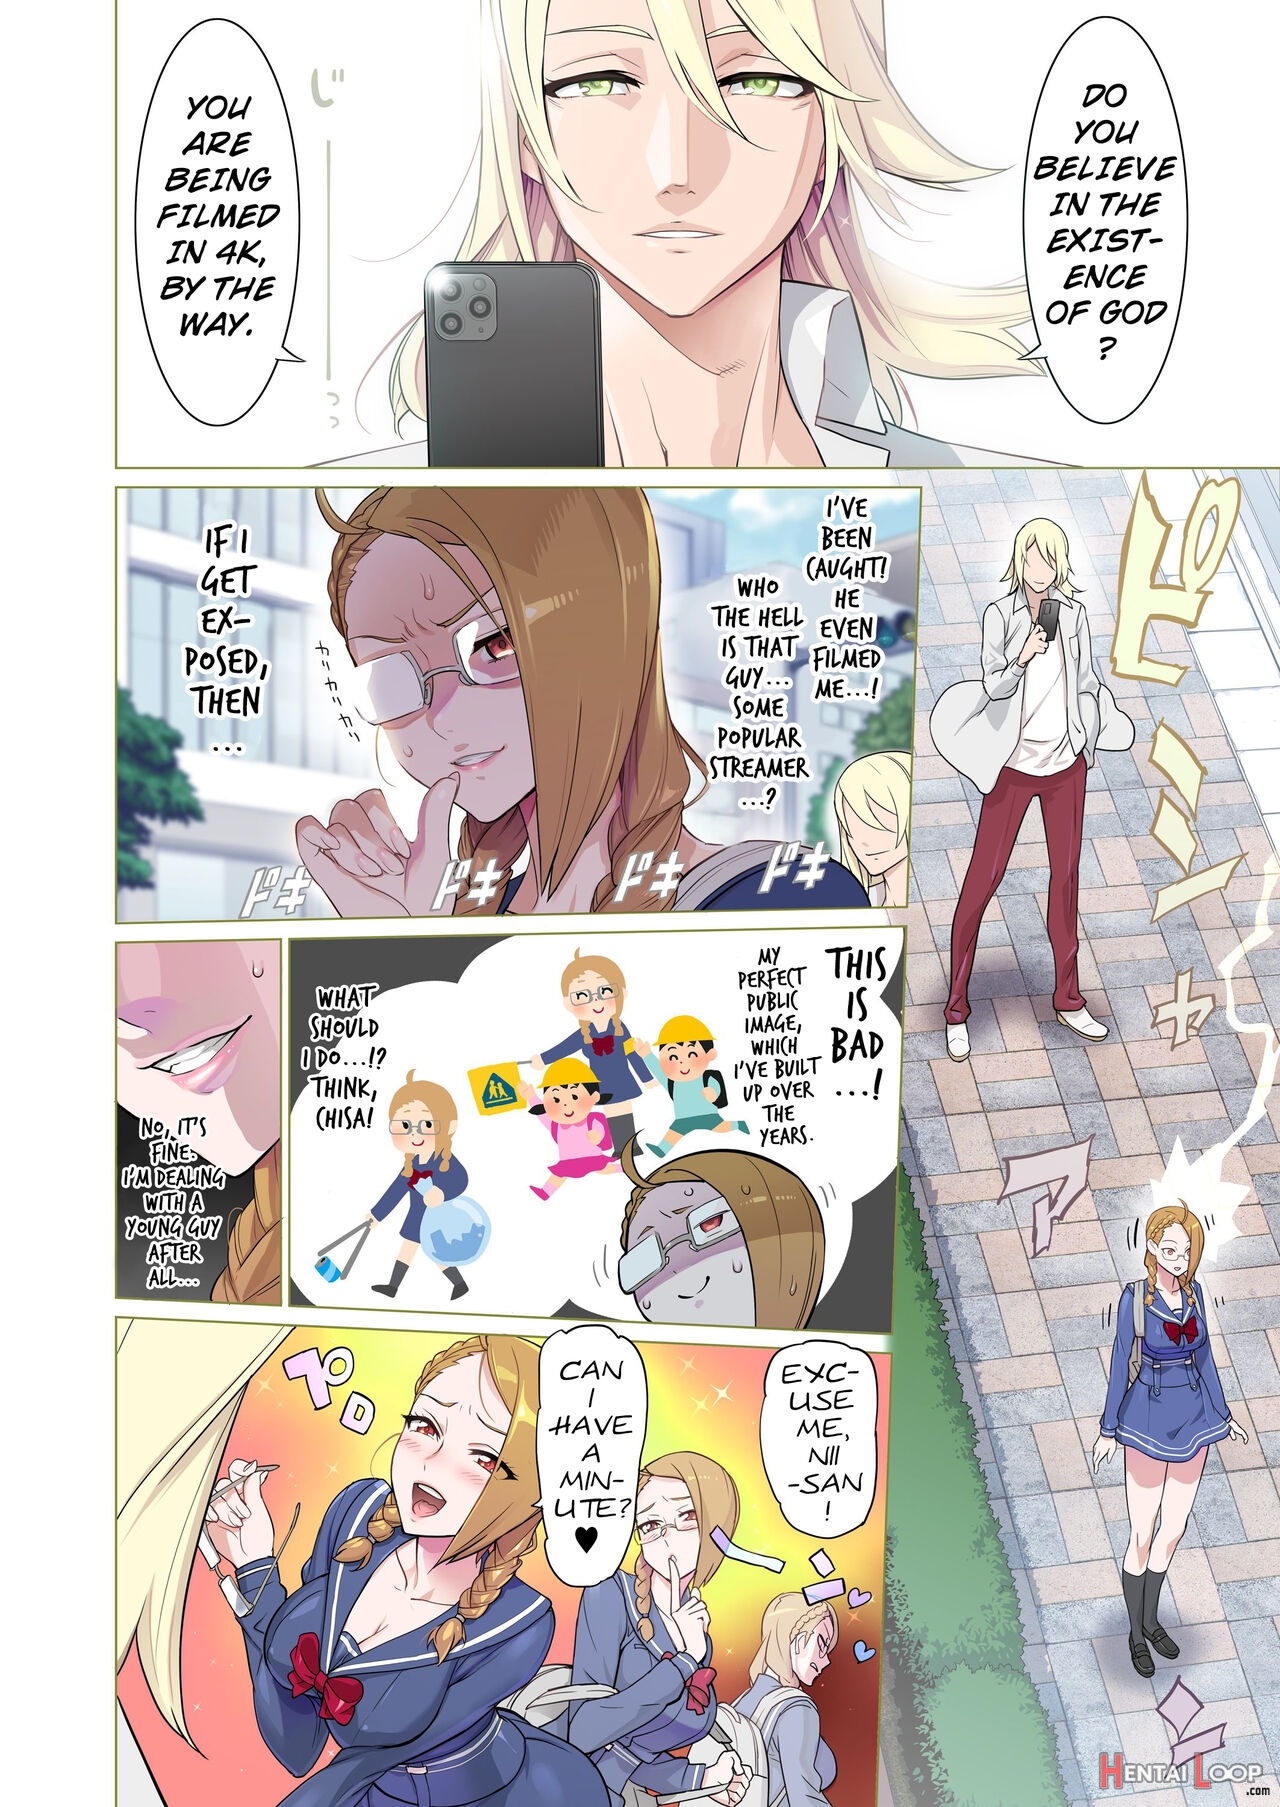 "aku X 3" Manga 1 page 3